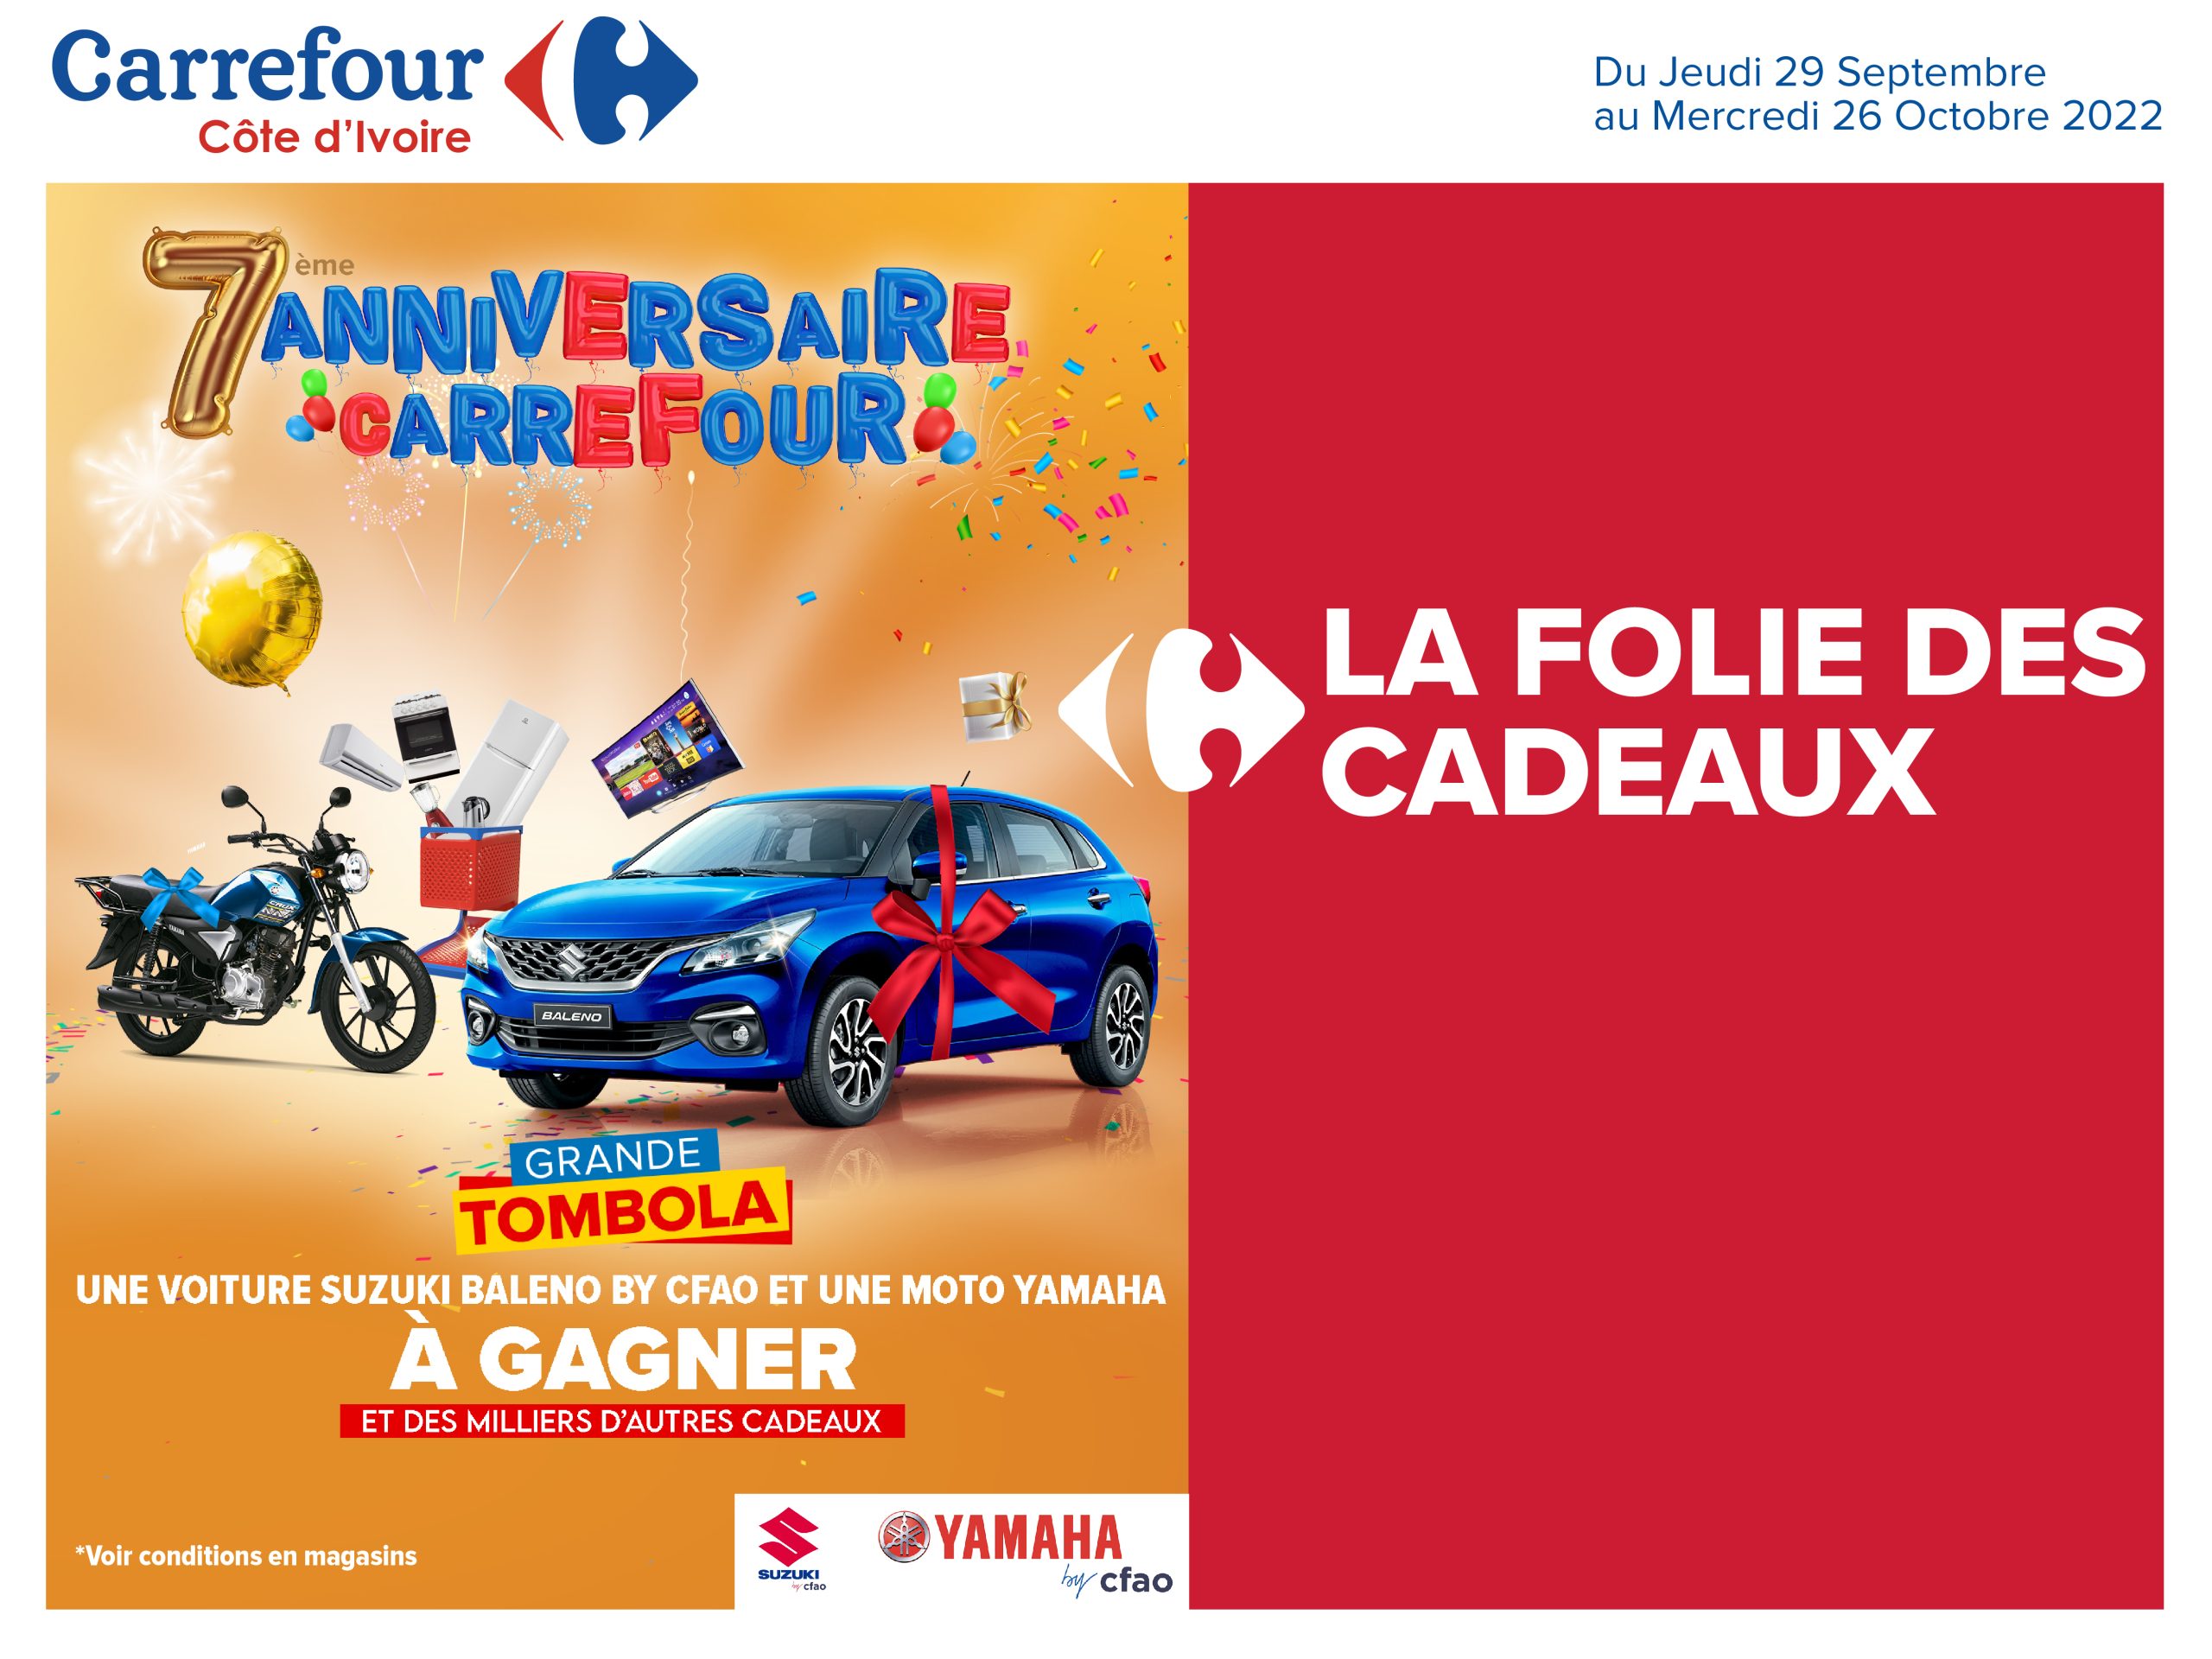 C’est le Septième anniversaire de Carrefour en Côte d’Ivoire